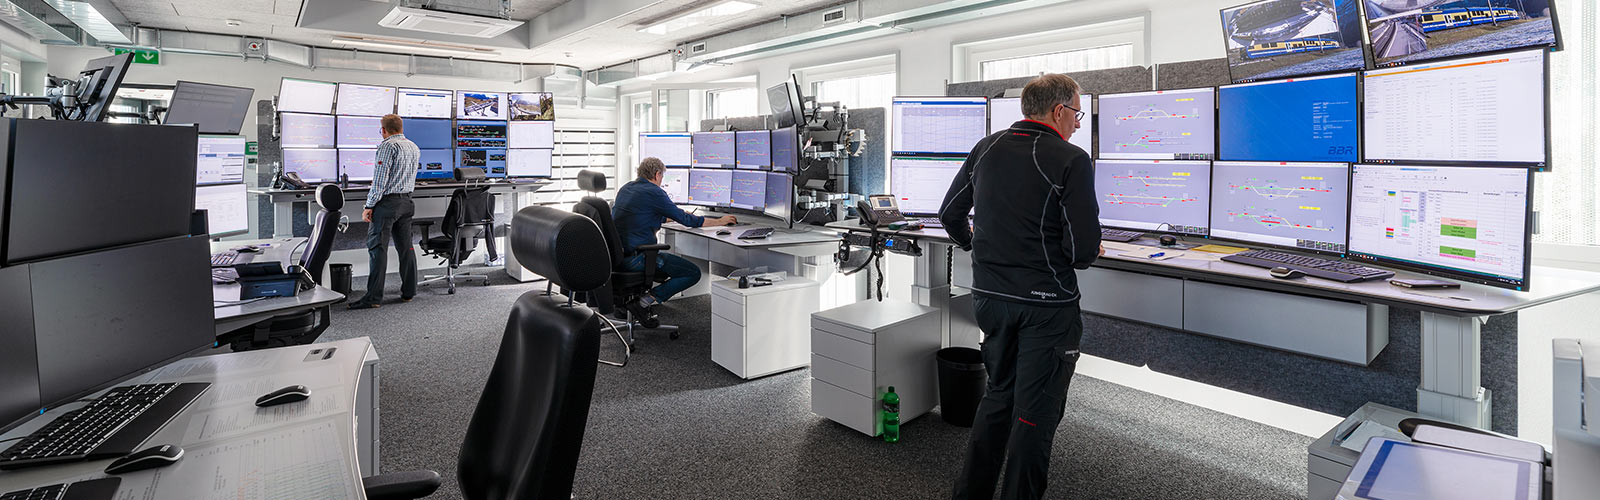 Junfraujoch Control Centre